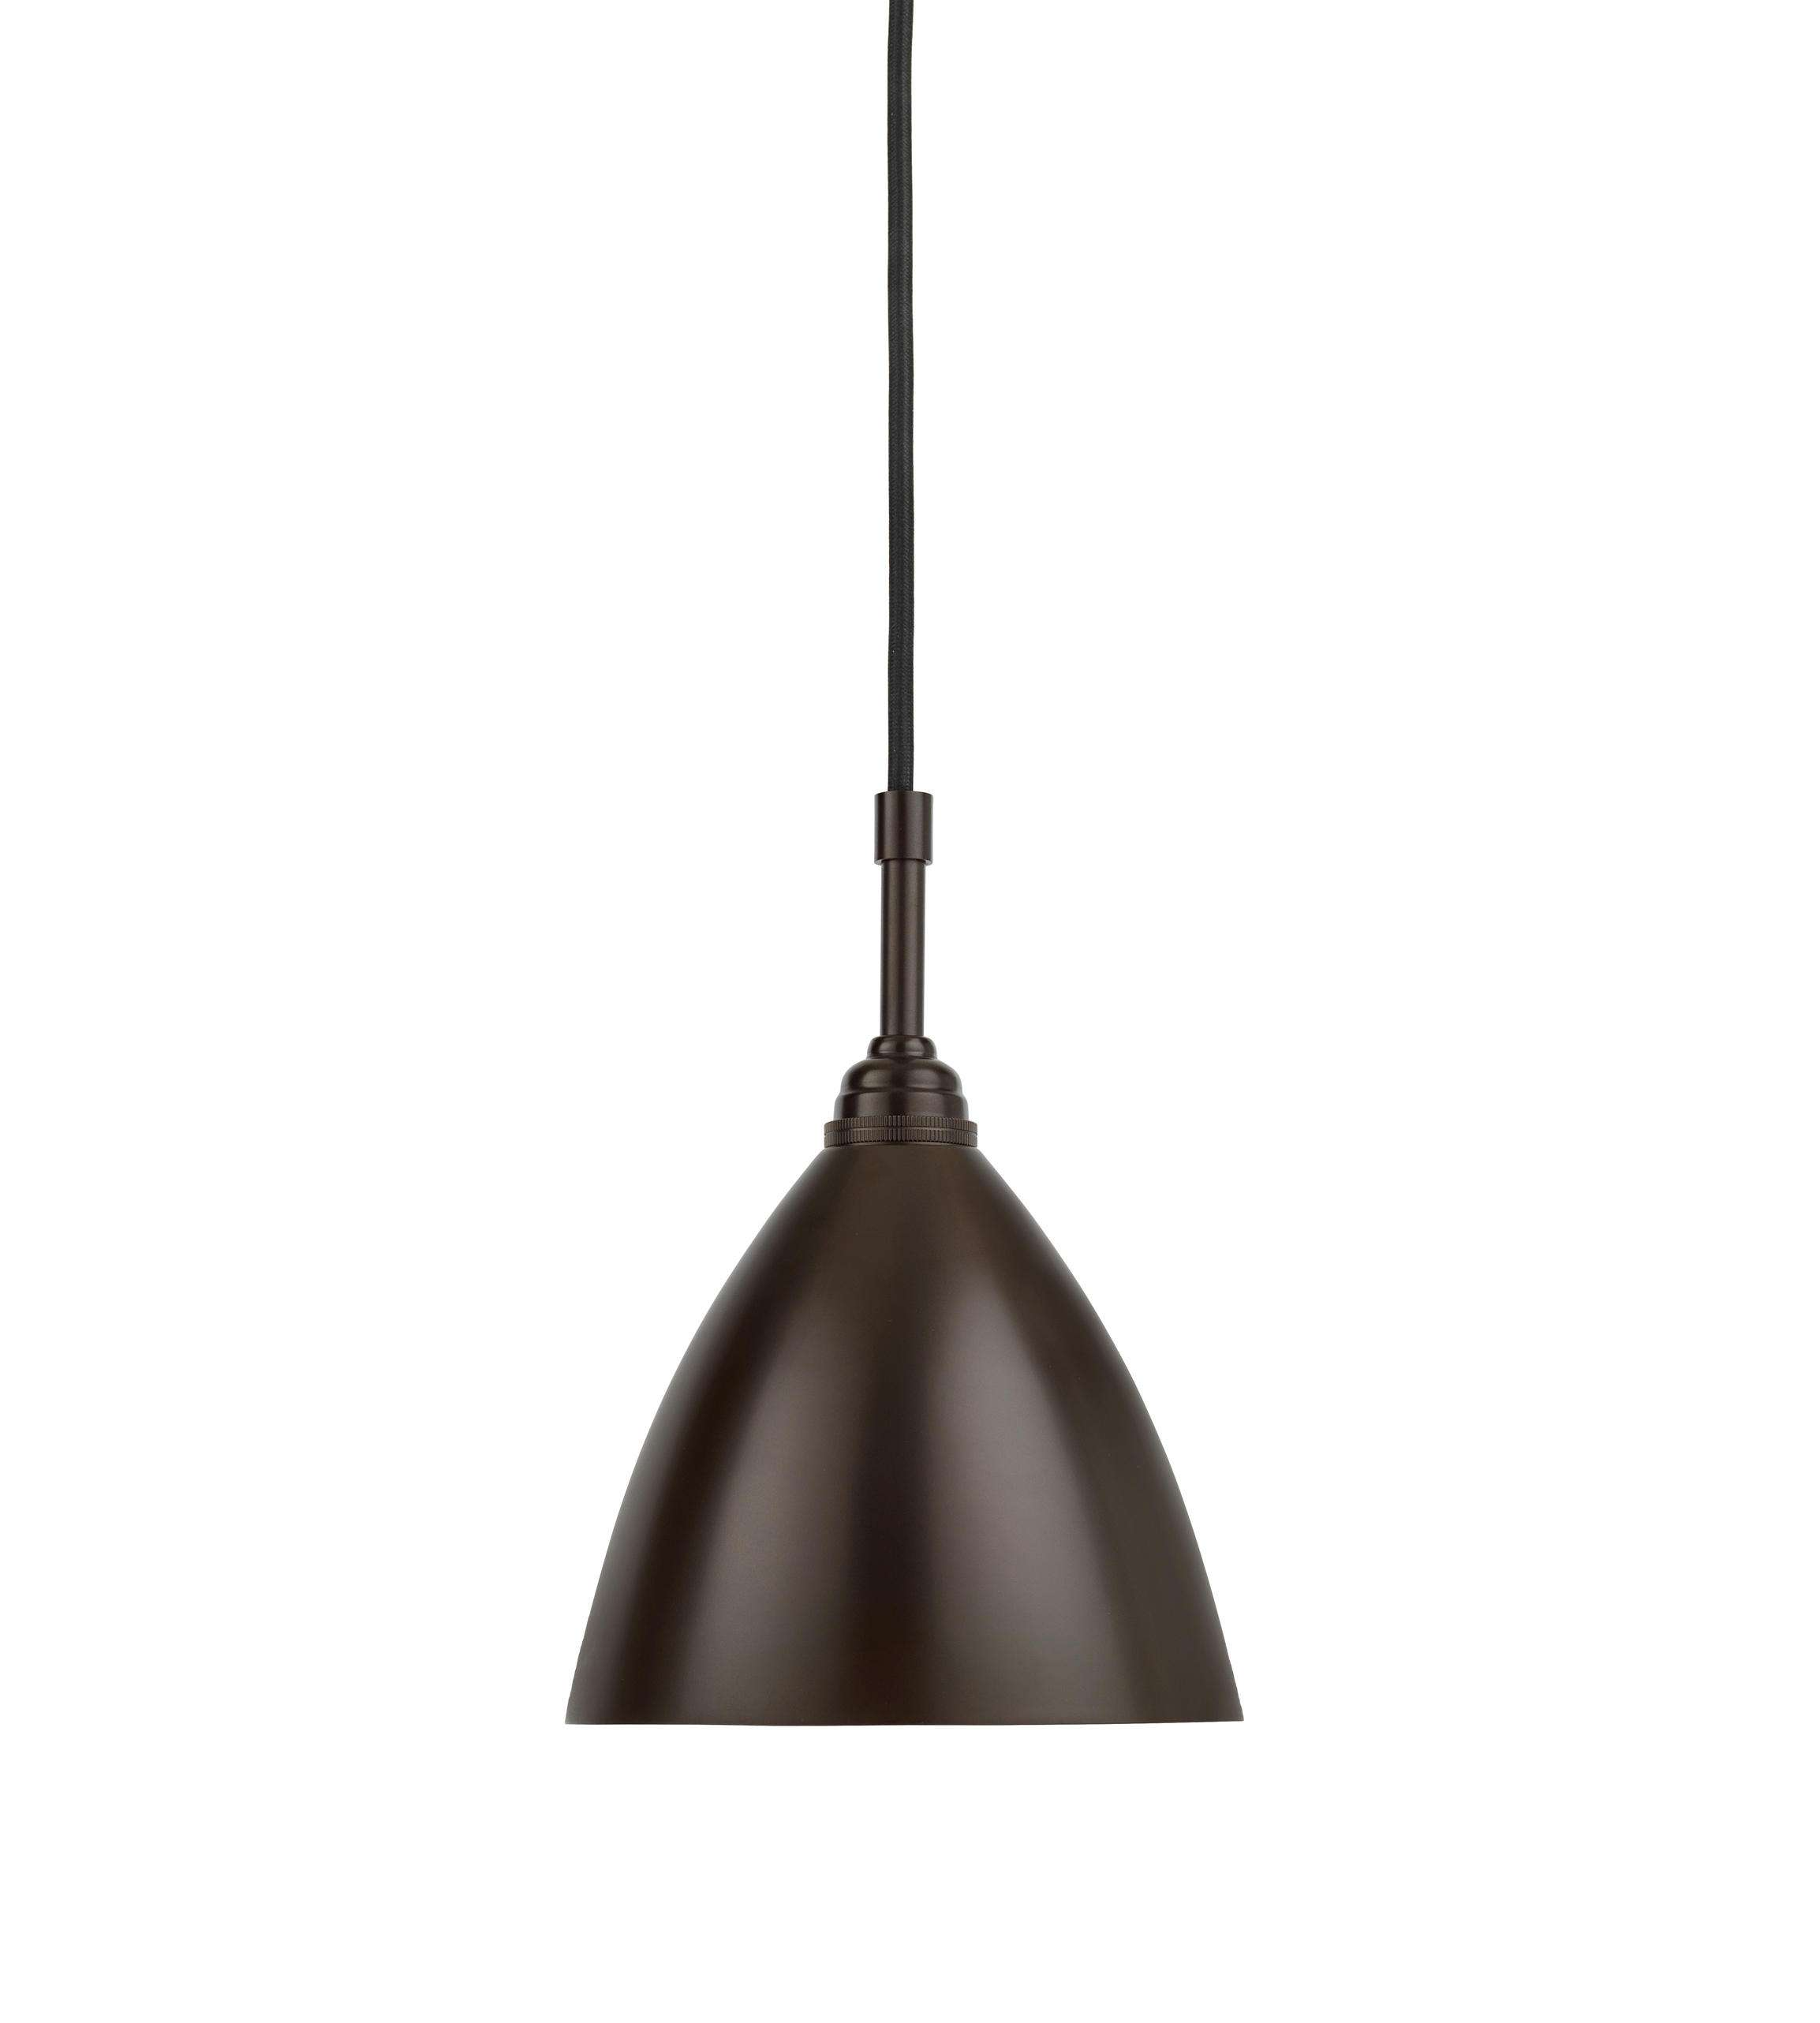 5-свет подвесной светильник в стиле фермерского дома | Бронзовые рустовые люстры Подвесной светильник